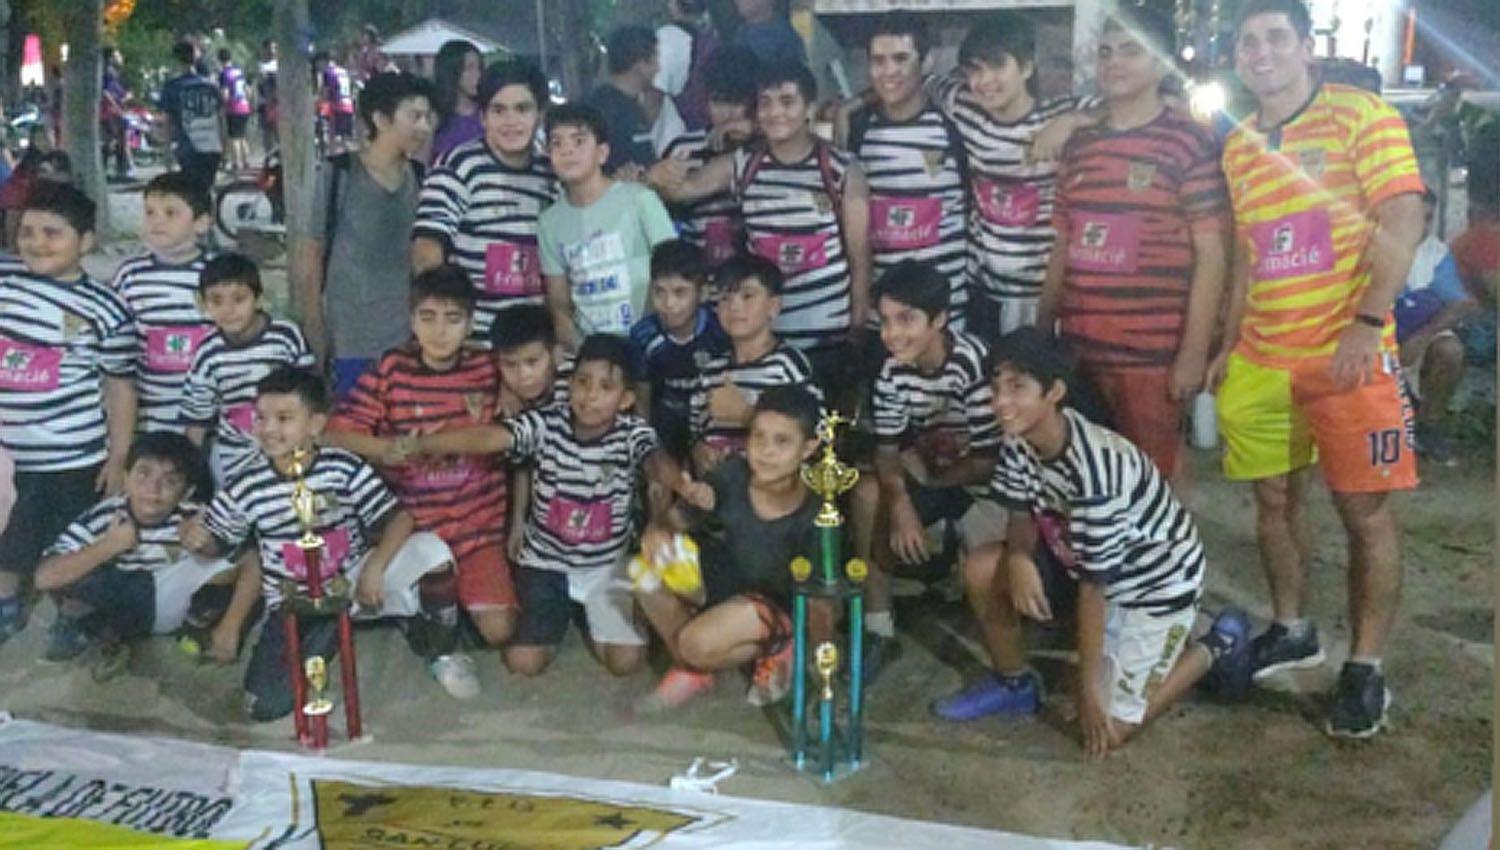 La Escuela de Fuacutetbol San Luis Gonzaga celebraraacute sus 5 antildeos